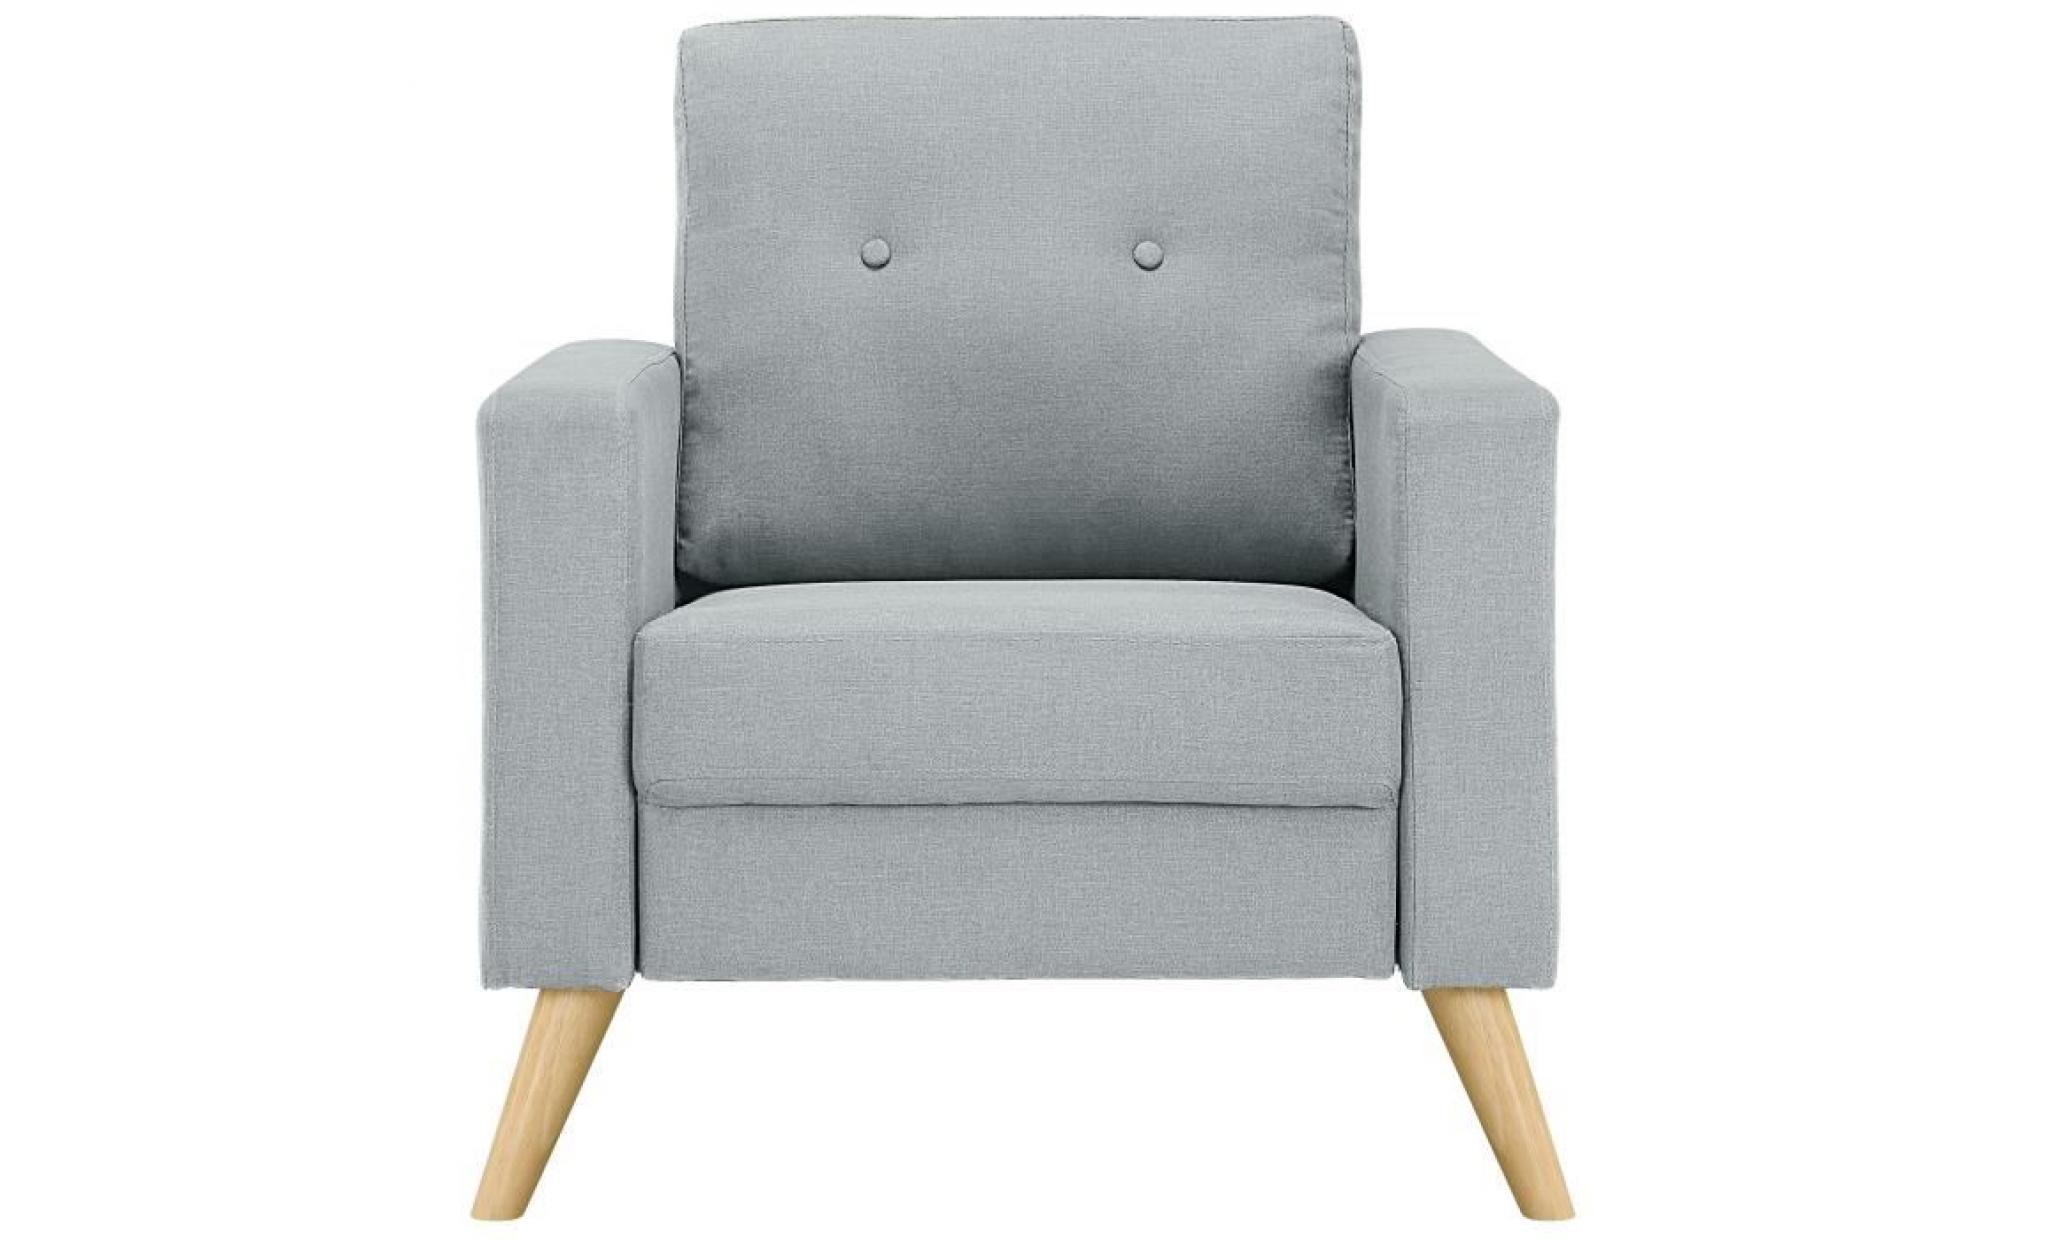 ibra fauteuil   tissu gris clair   scandinave   l 80 x p 83 cm